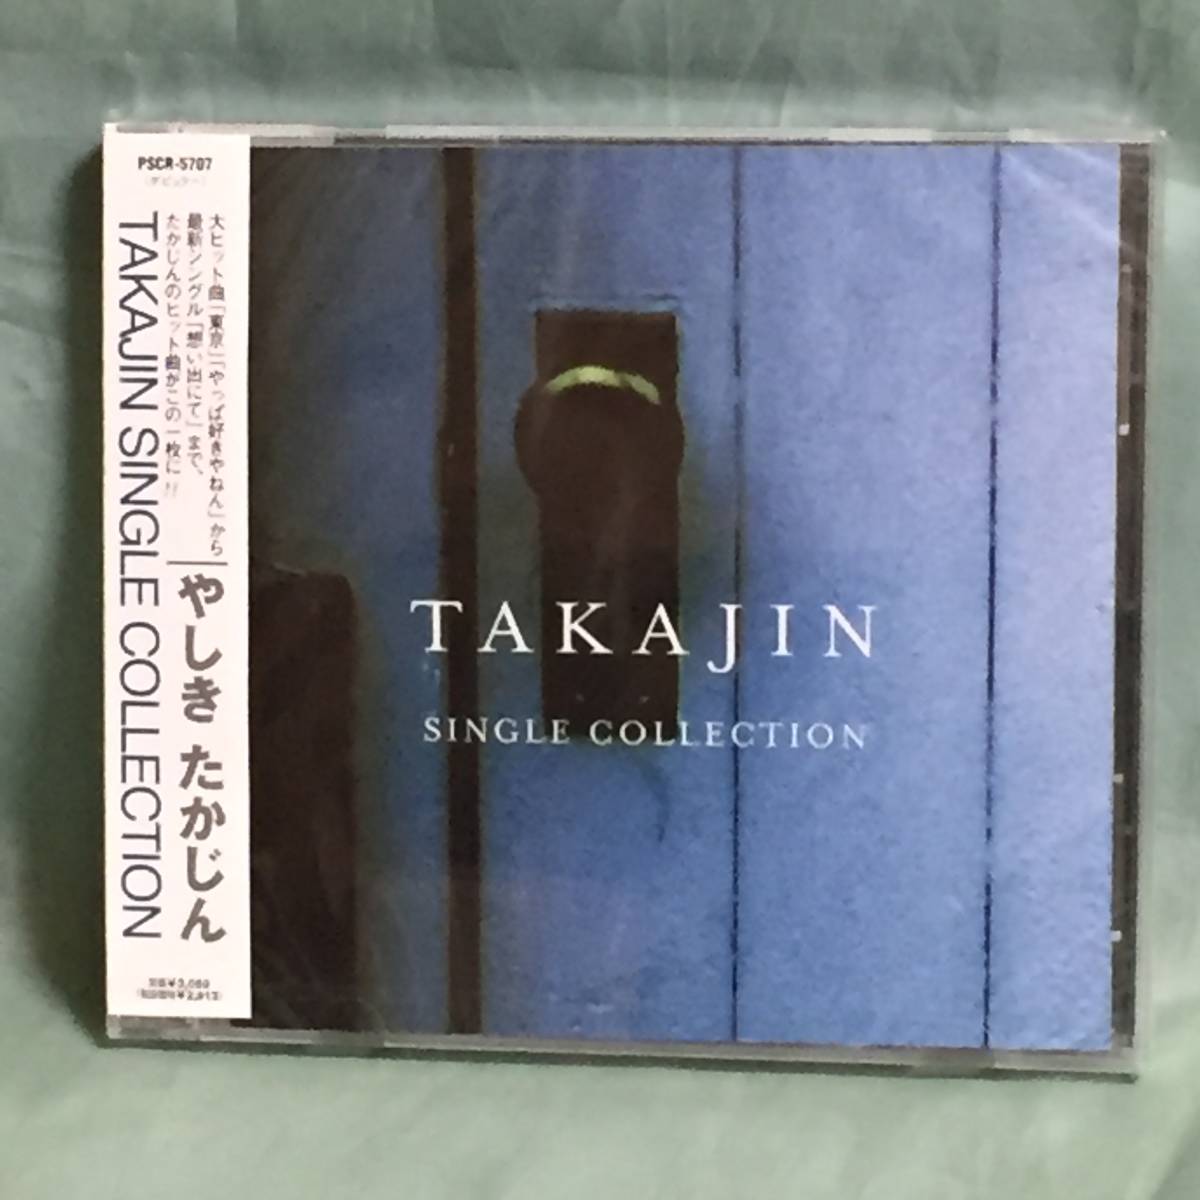 やしきたかじん / TAKAJIN SINGLE COLLECTION CD 未開封_画像1